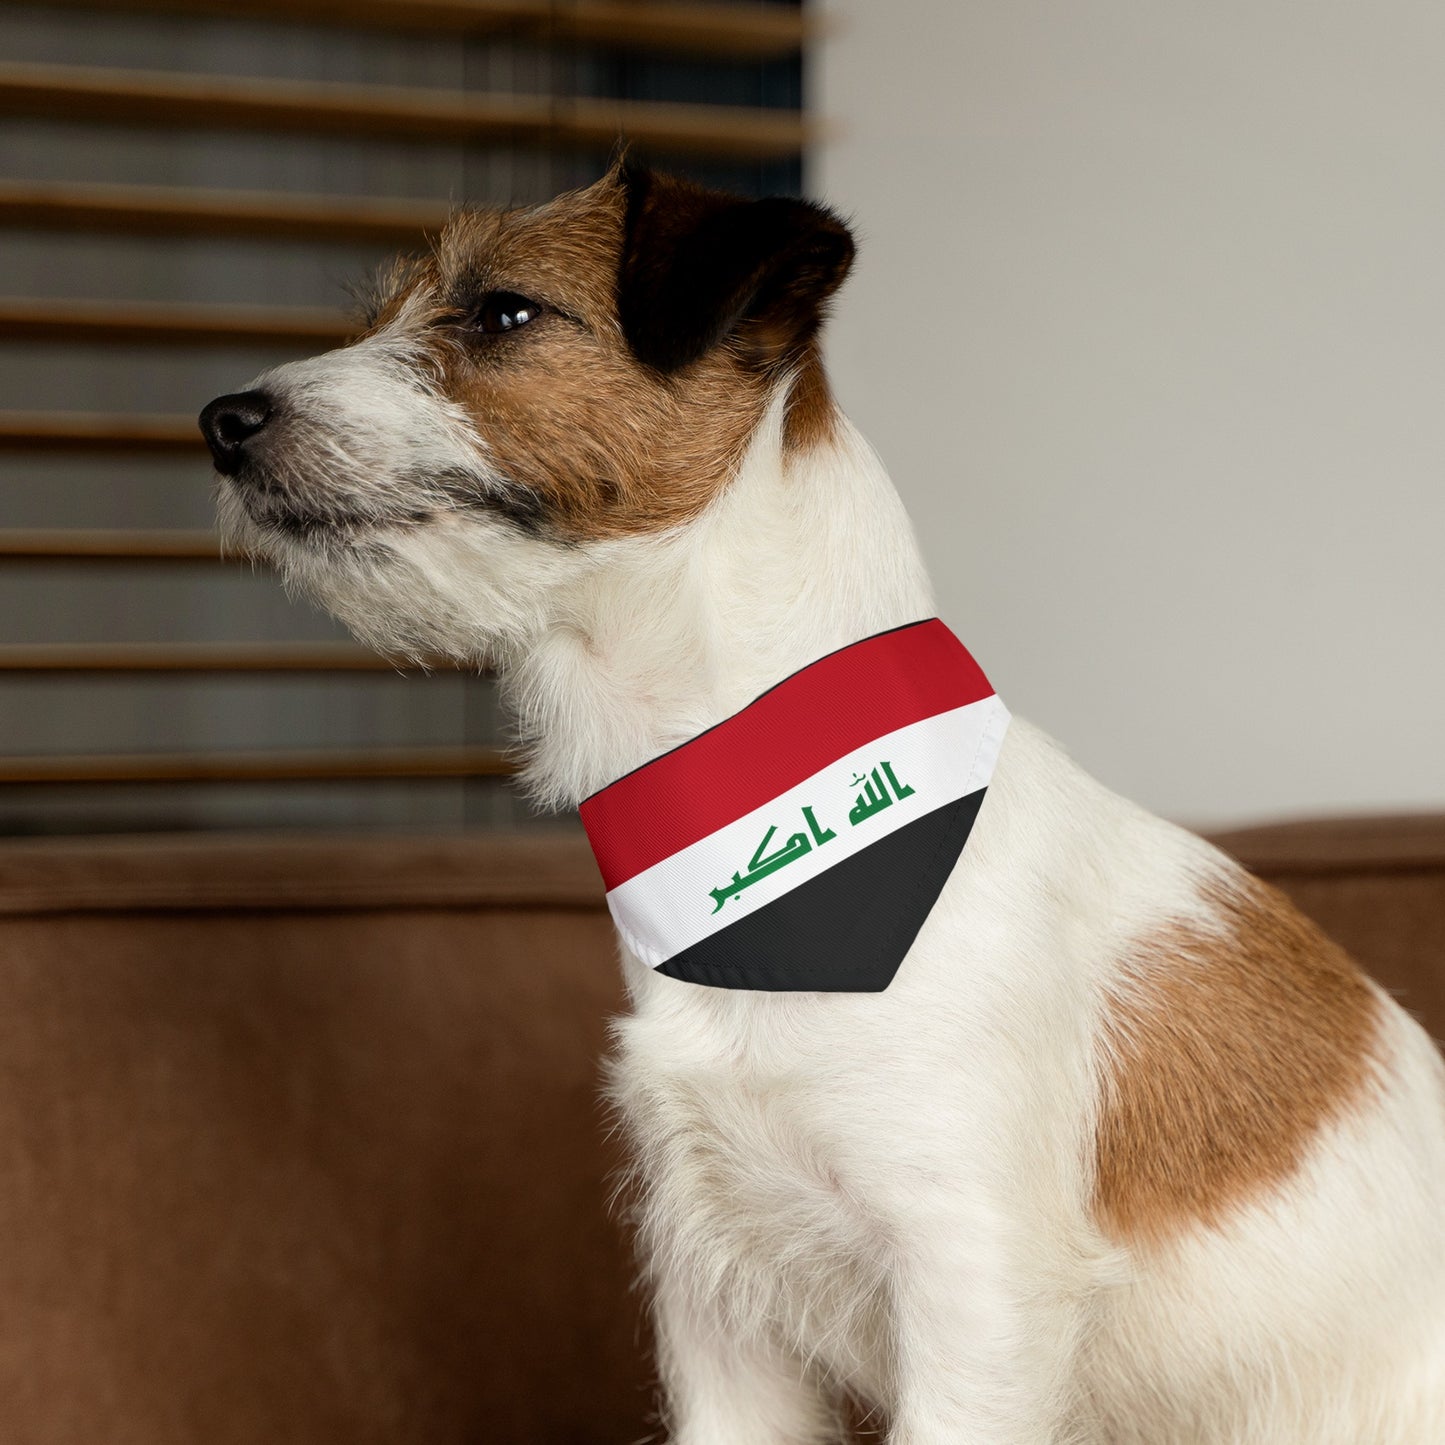 Iraq Pet Bandana Collar | Iraqi Dog Cat Animal